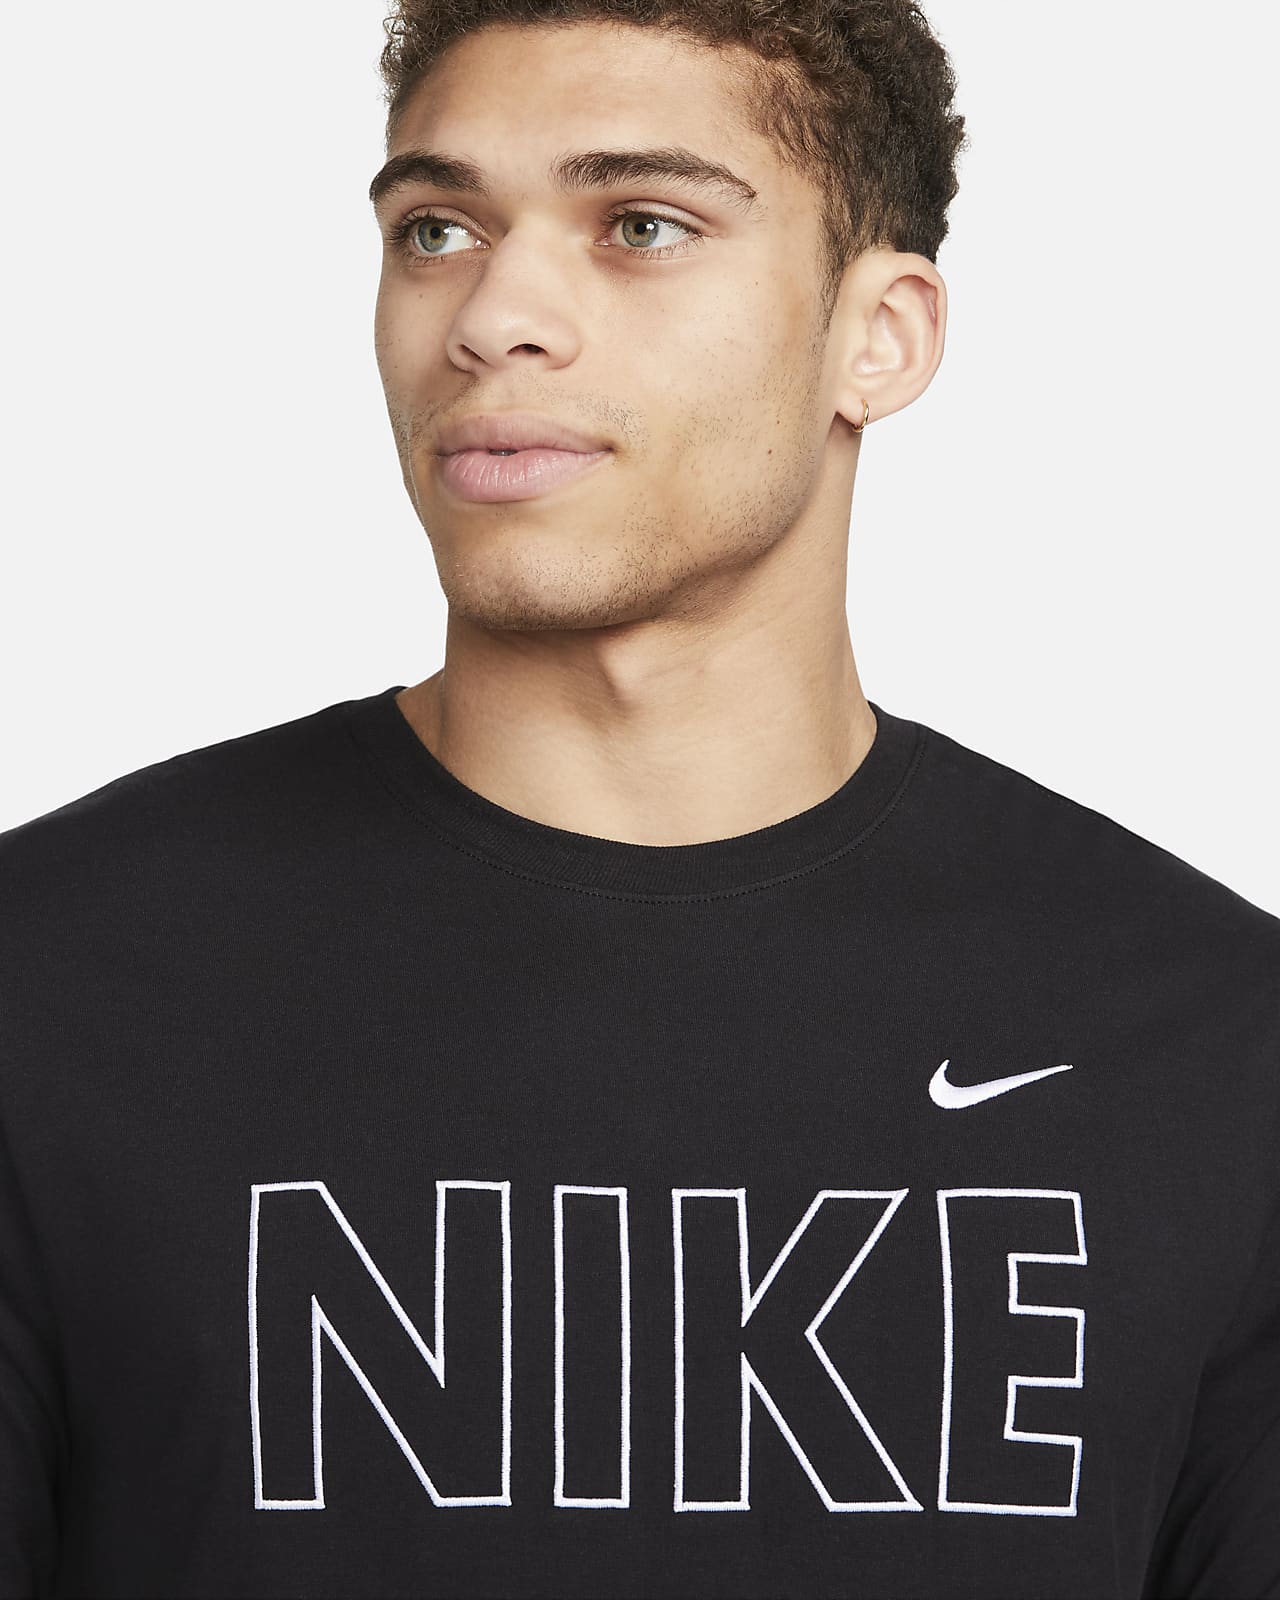 Men\'s Nike T-Shirt. Sportswear